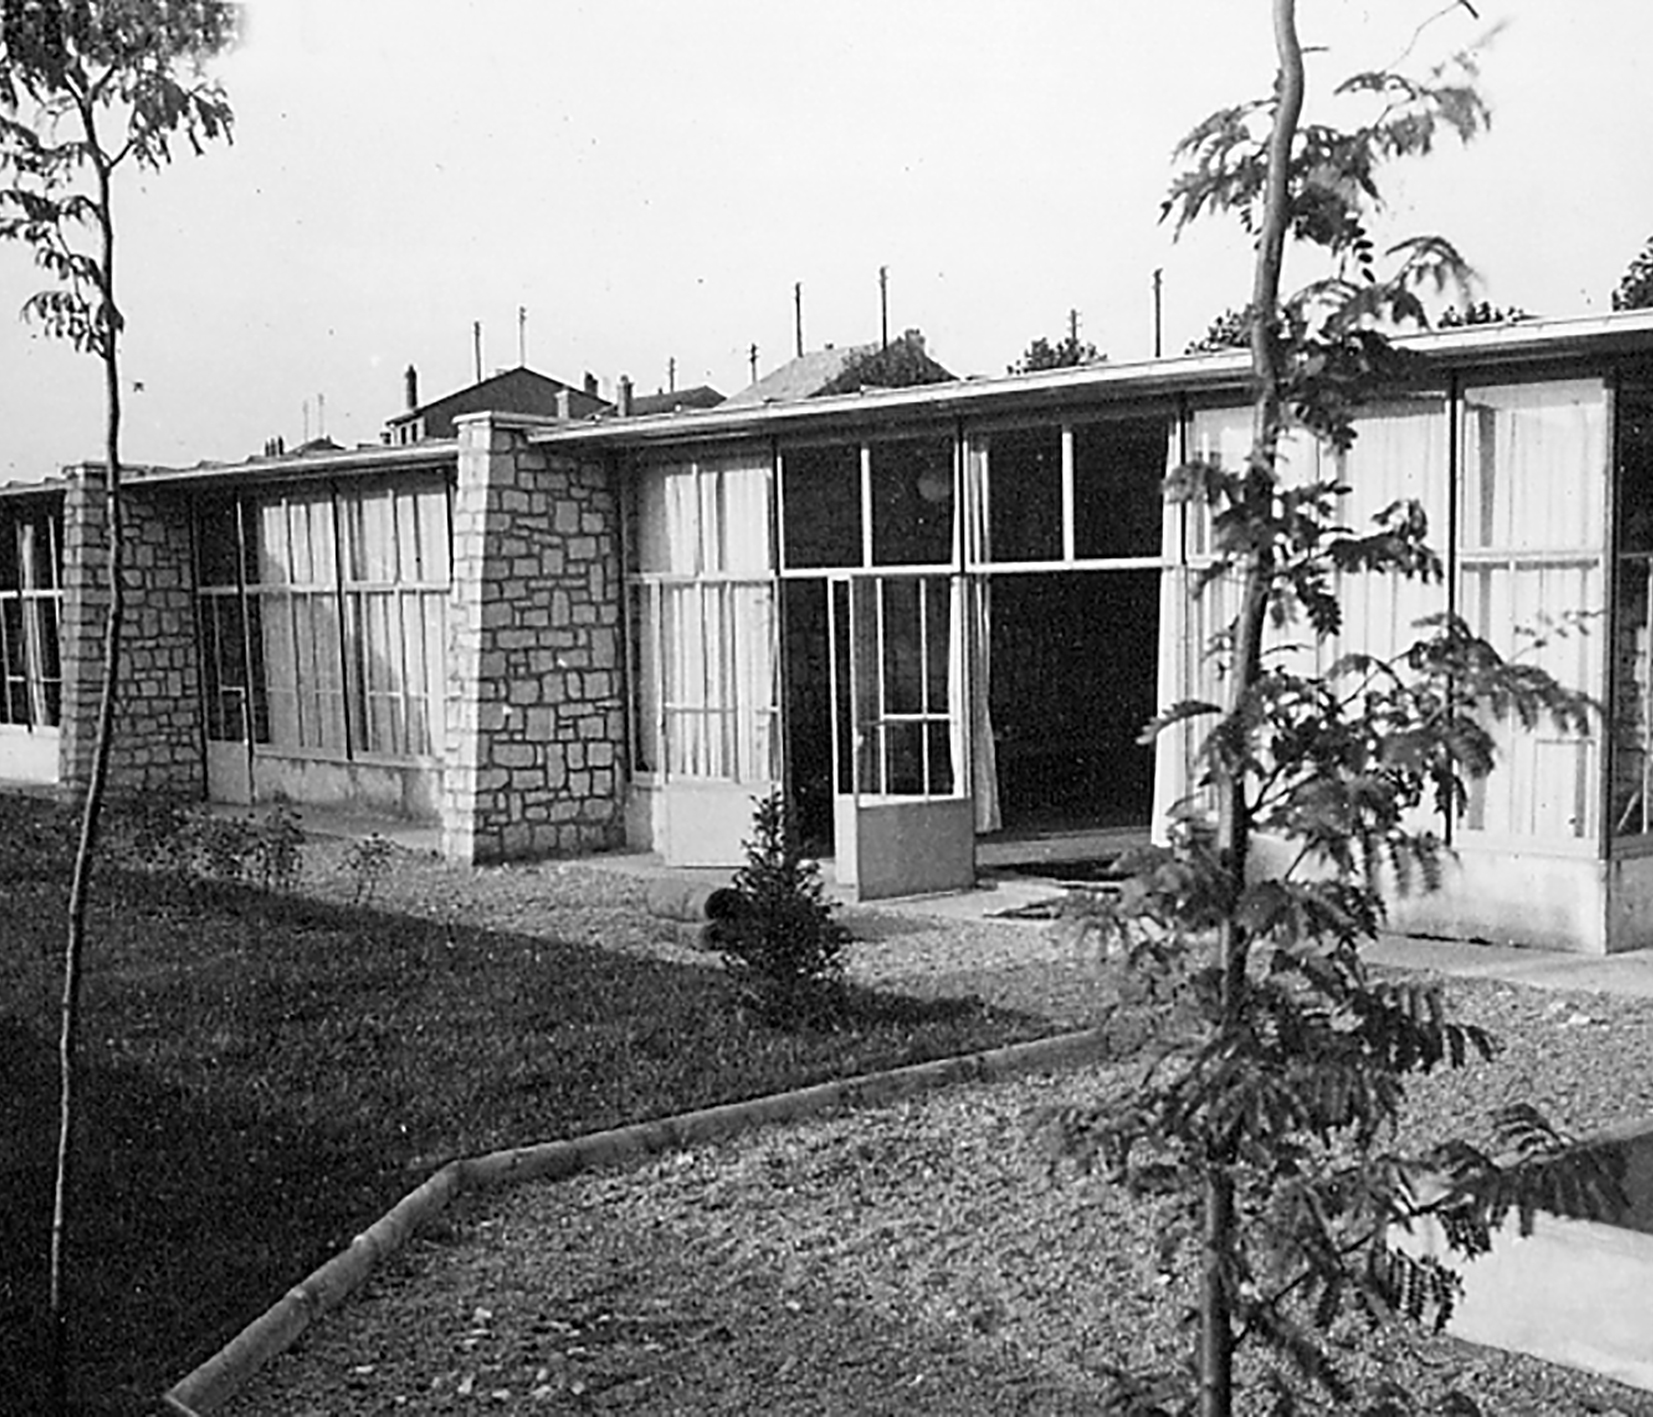 Placieux kindergarten, Villiers-lès-Nancy, 1951 (architect H. Prouvé).